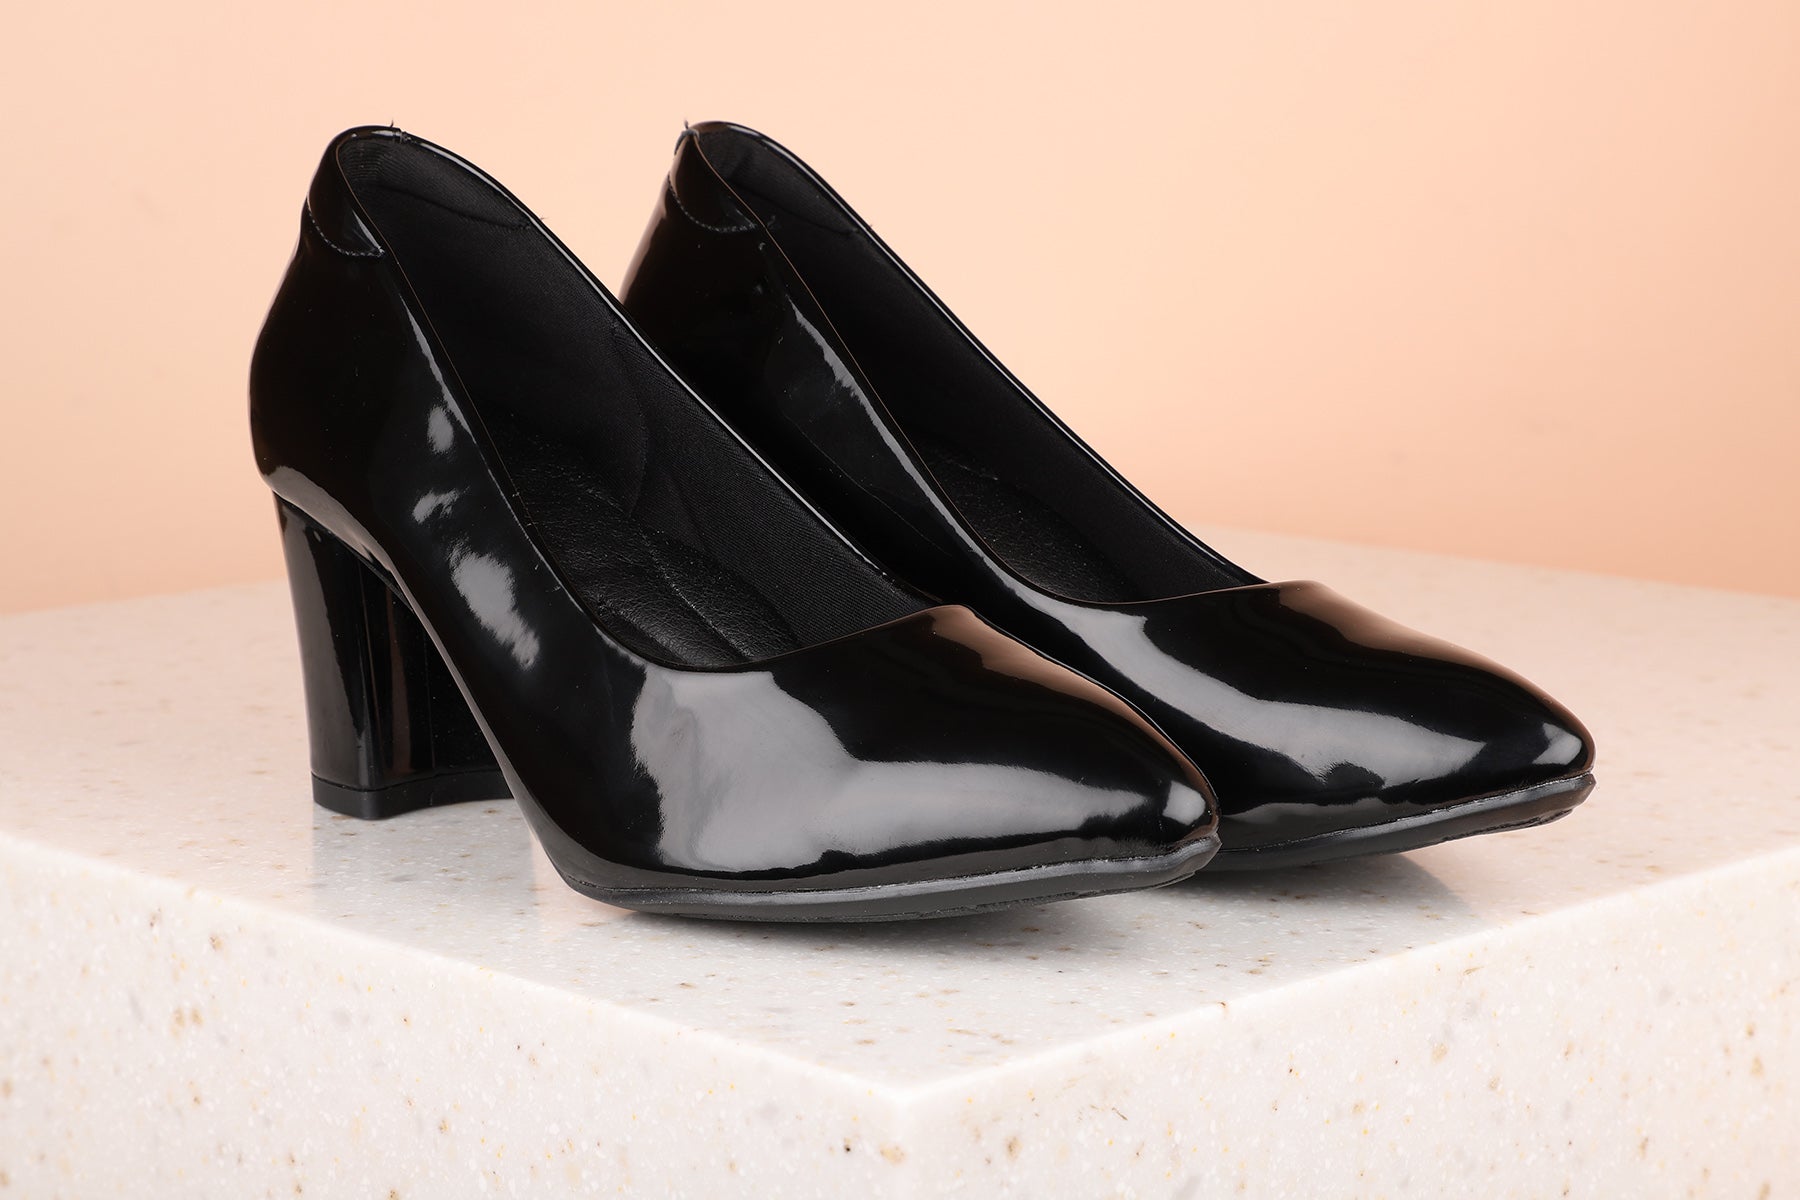 Buy Inc.5 Women Beige Solid Block Heels at Amazon.in